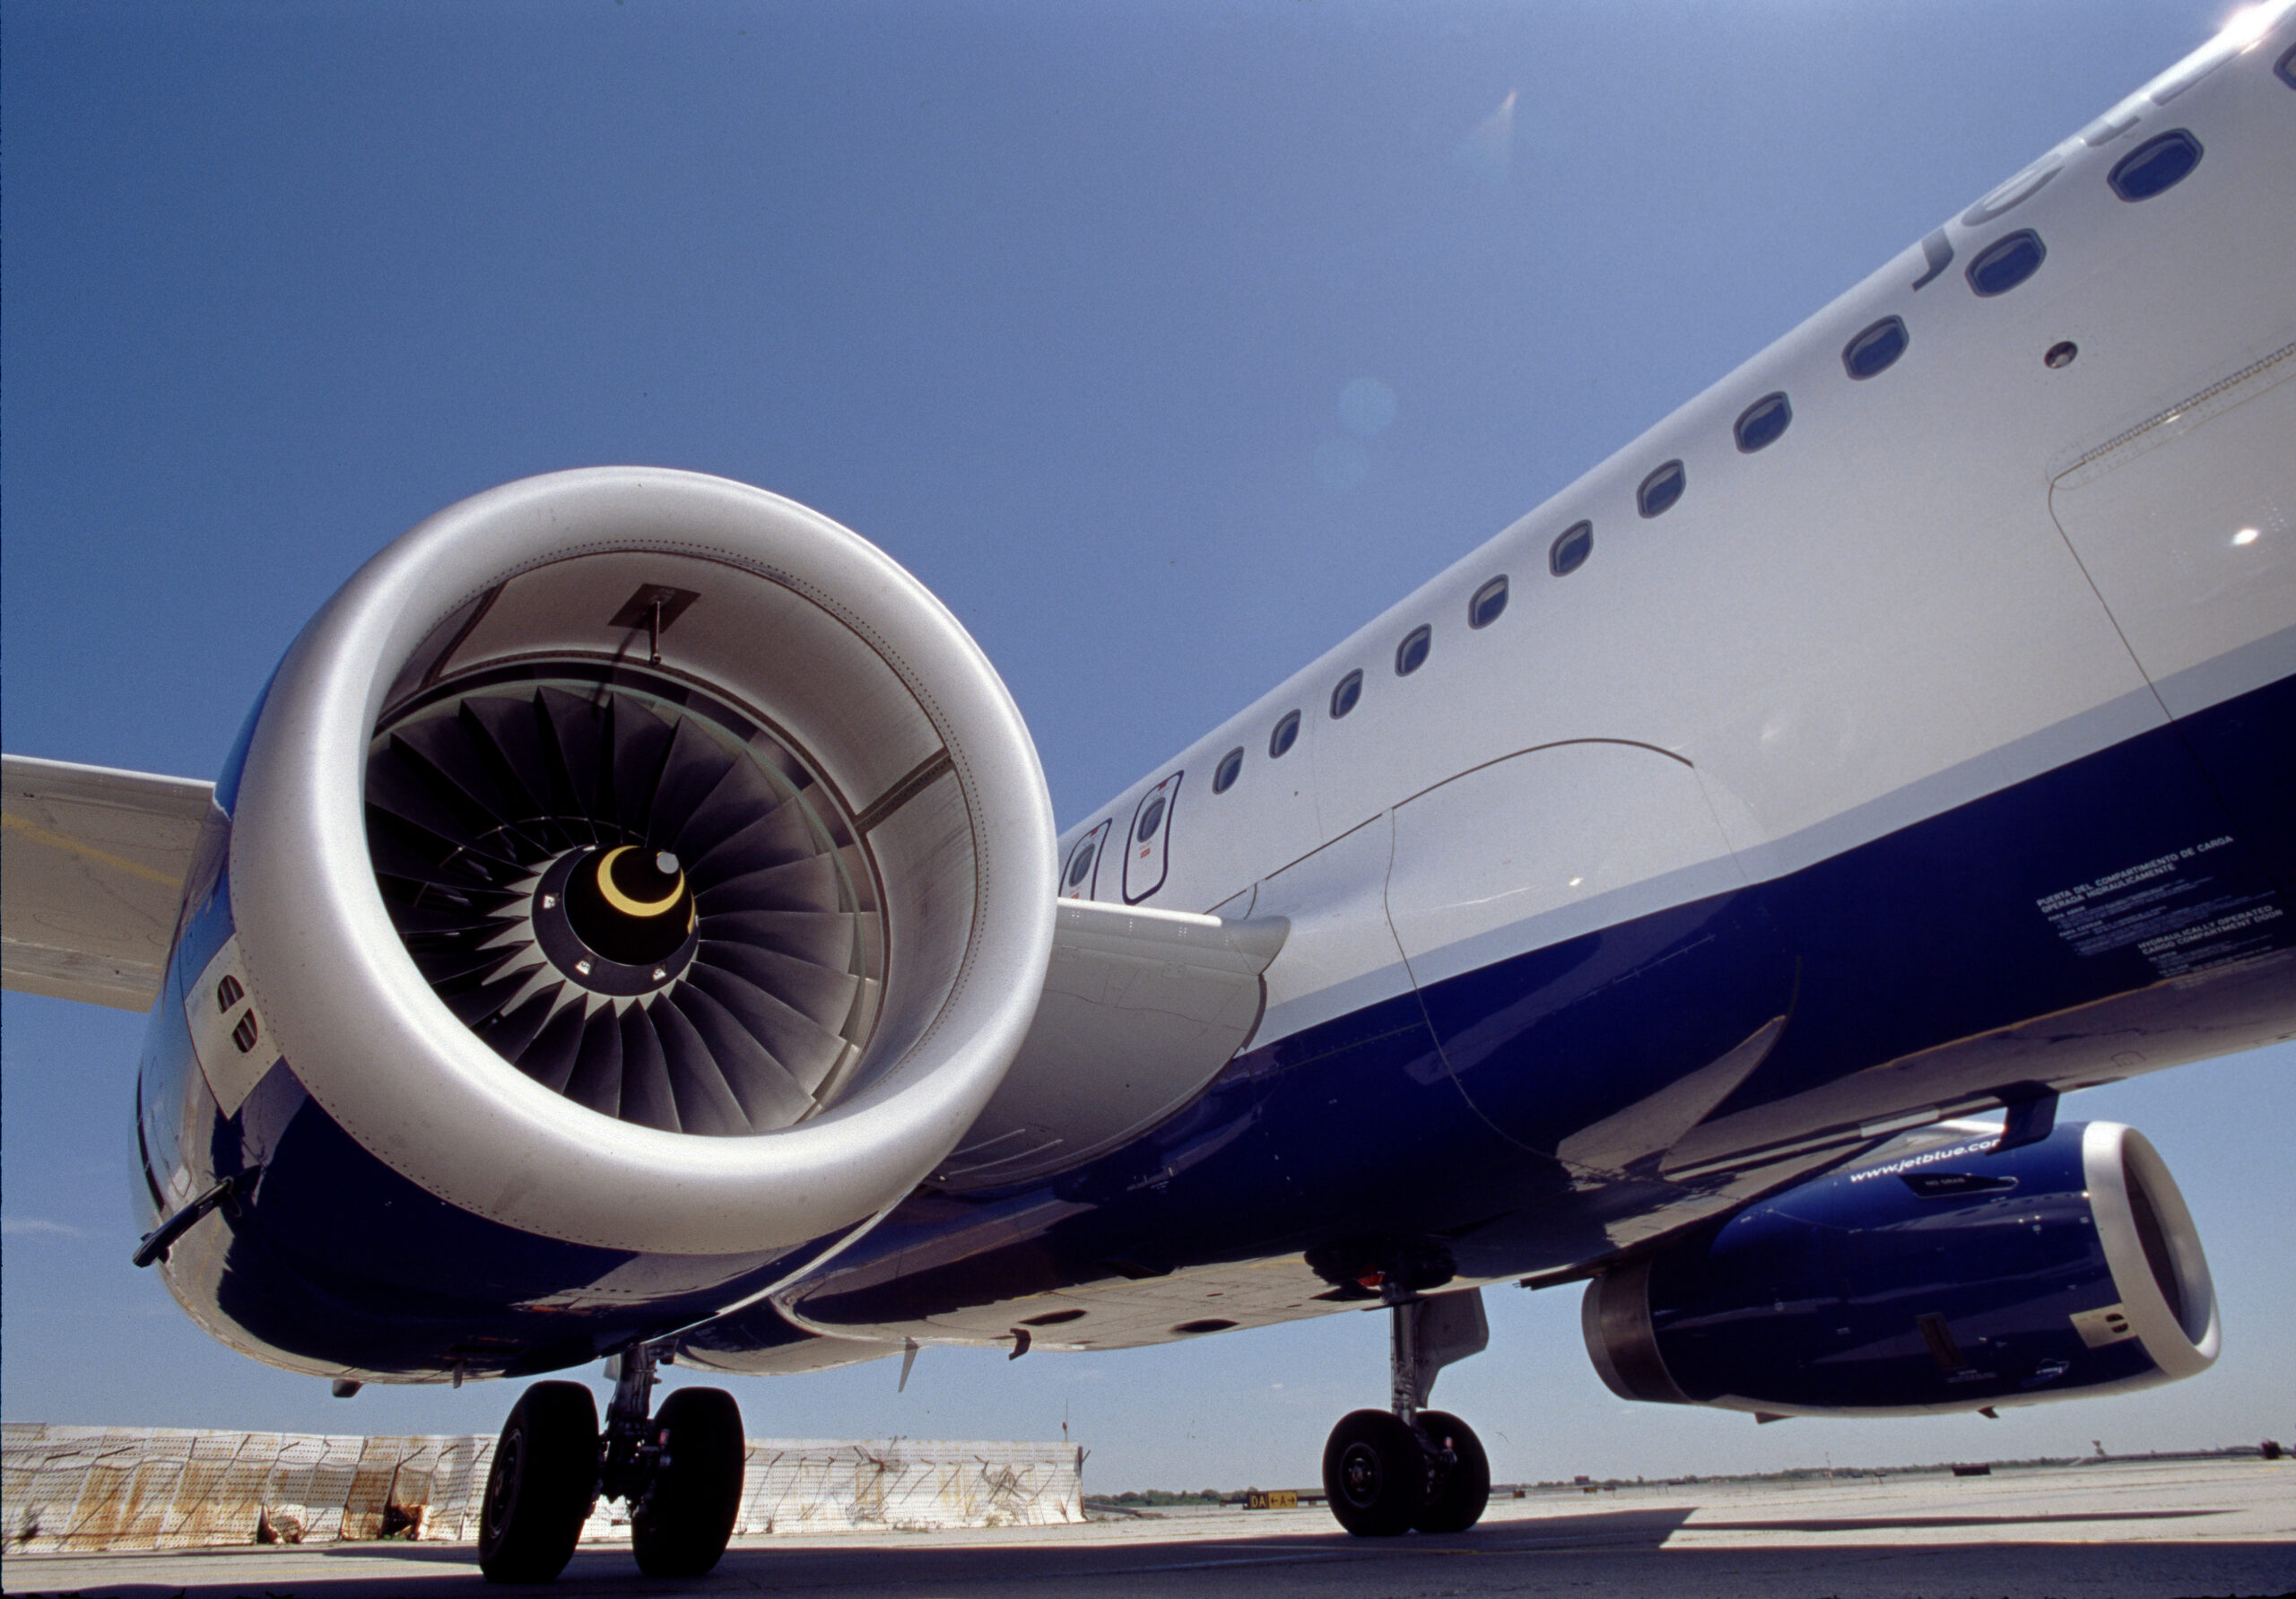 FAA Raises Concerns With IAE V2500 Engine